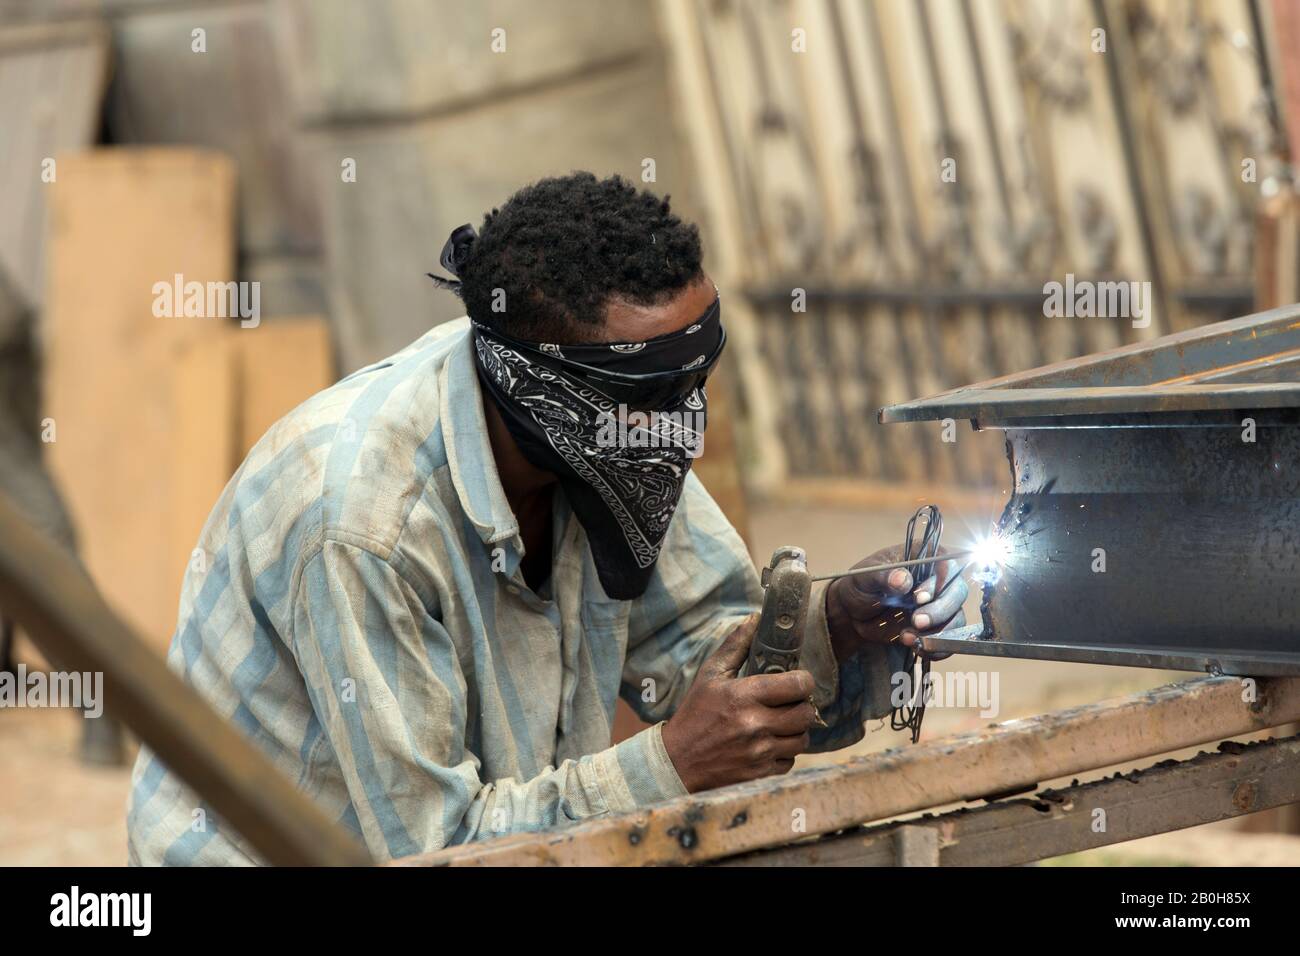 07.11.2019, Adama, Oromiyaa, Ethiopie - un serrurier soudure des portes et des grilles ensemble dans la rue à l'aide d'une machine de soudage électrique. Il porte du soleil Banque D'Images